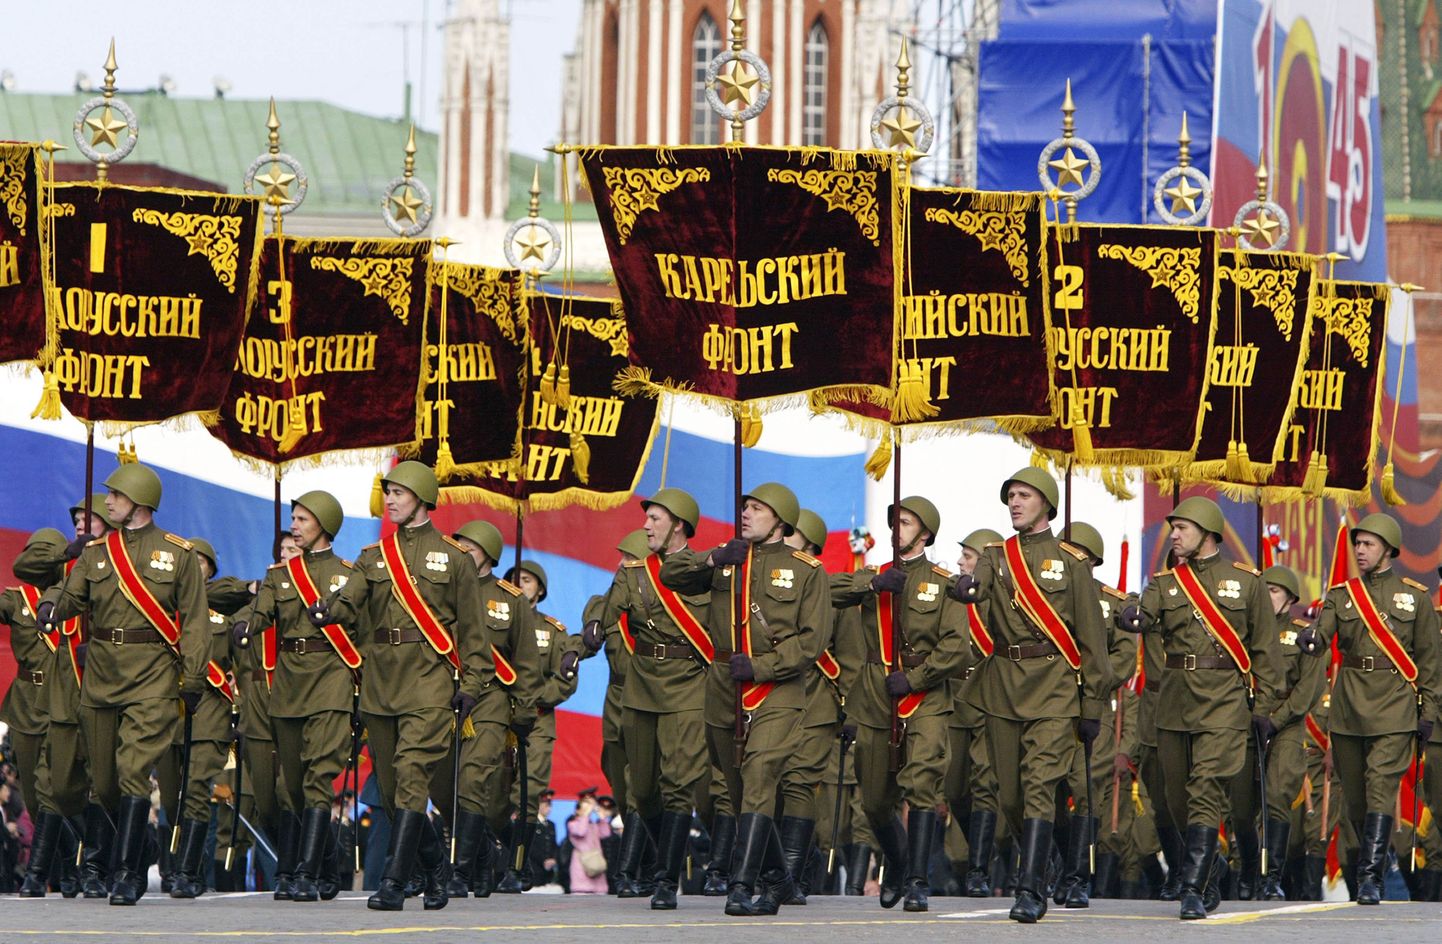 Pildil on Teise maailmasõjaaegseid mundreid kandvad Vene sõjaväelased eelmisel aastal Punasel väljakul toimunud võidupühaparaadil.